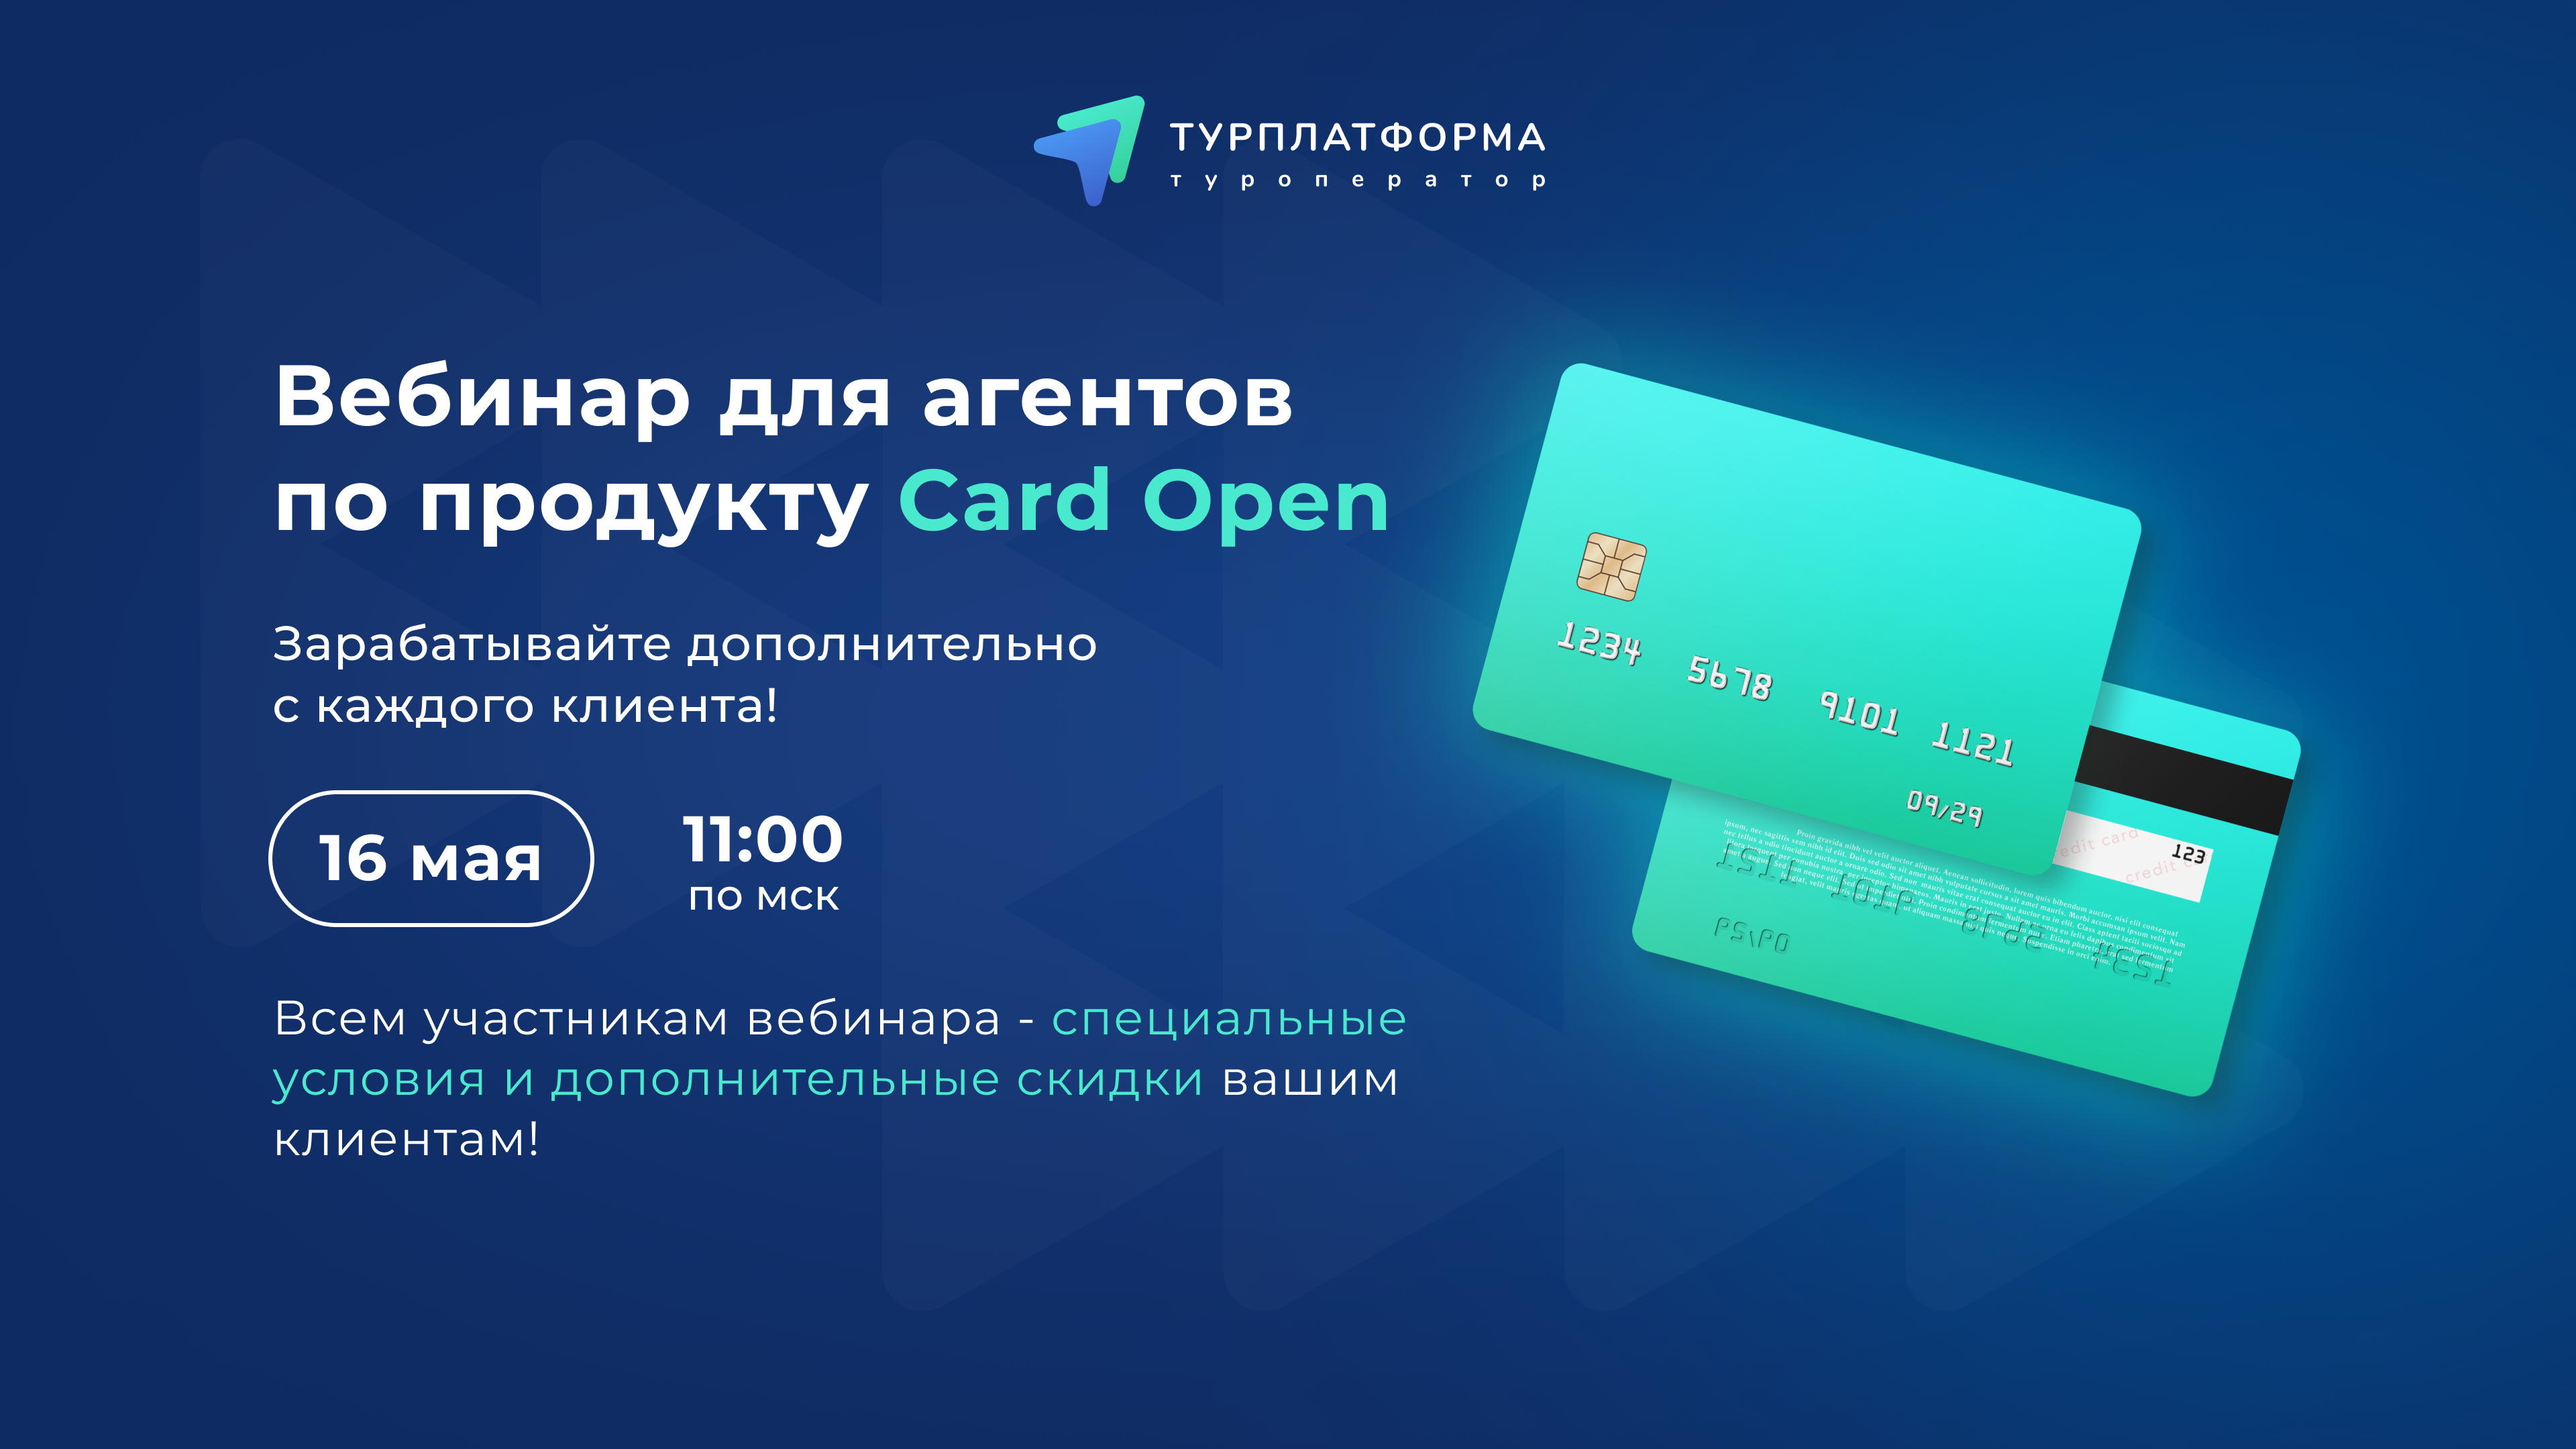 Семинар Туроператора Турплатформы совместно с партнером Card Open 16 мая (вторник) в 11:00